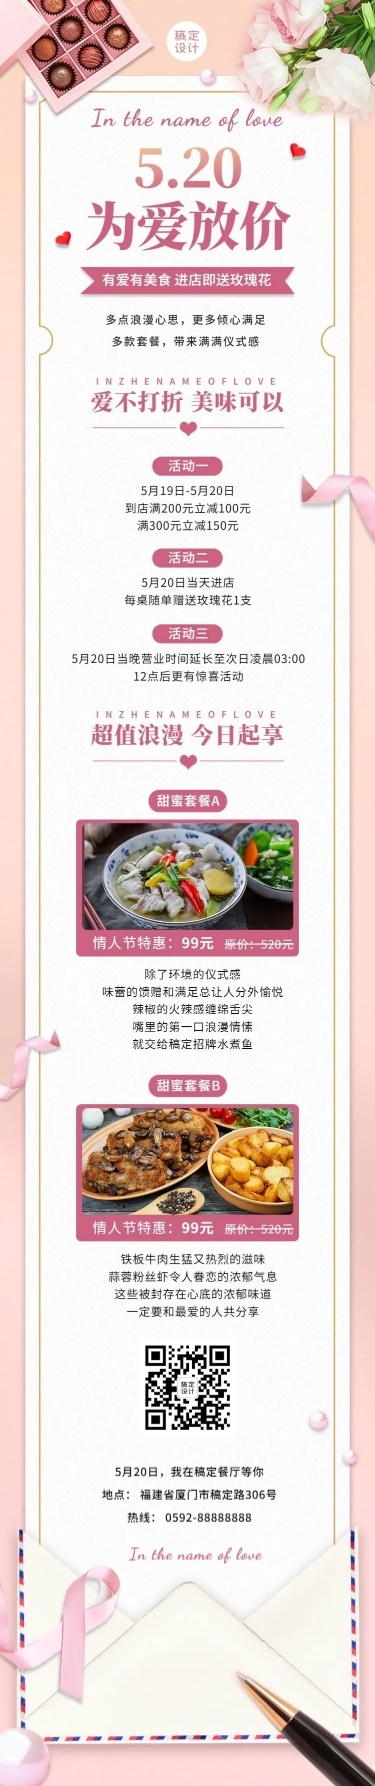 520情人节餐饮中餐营销文章长图